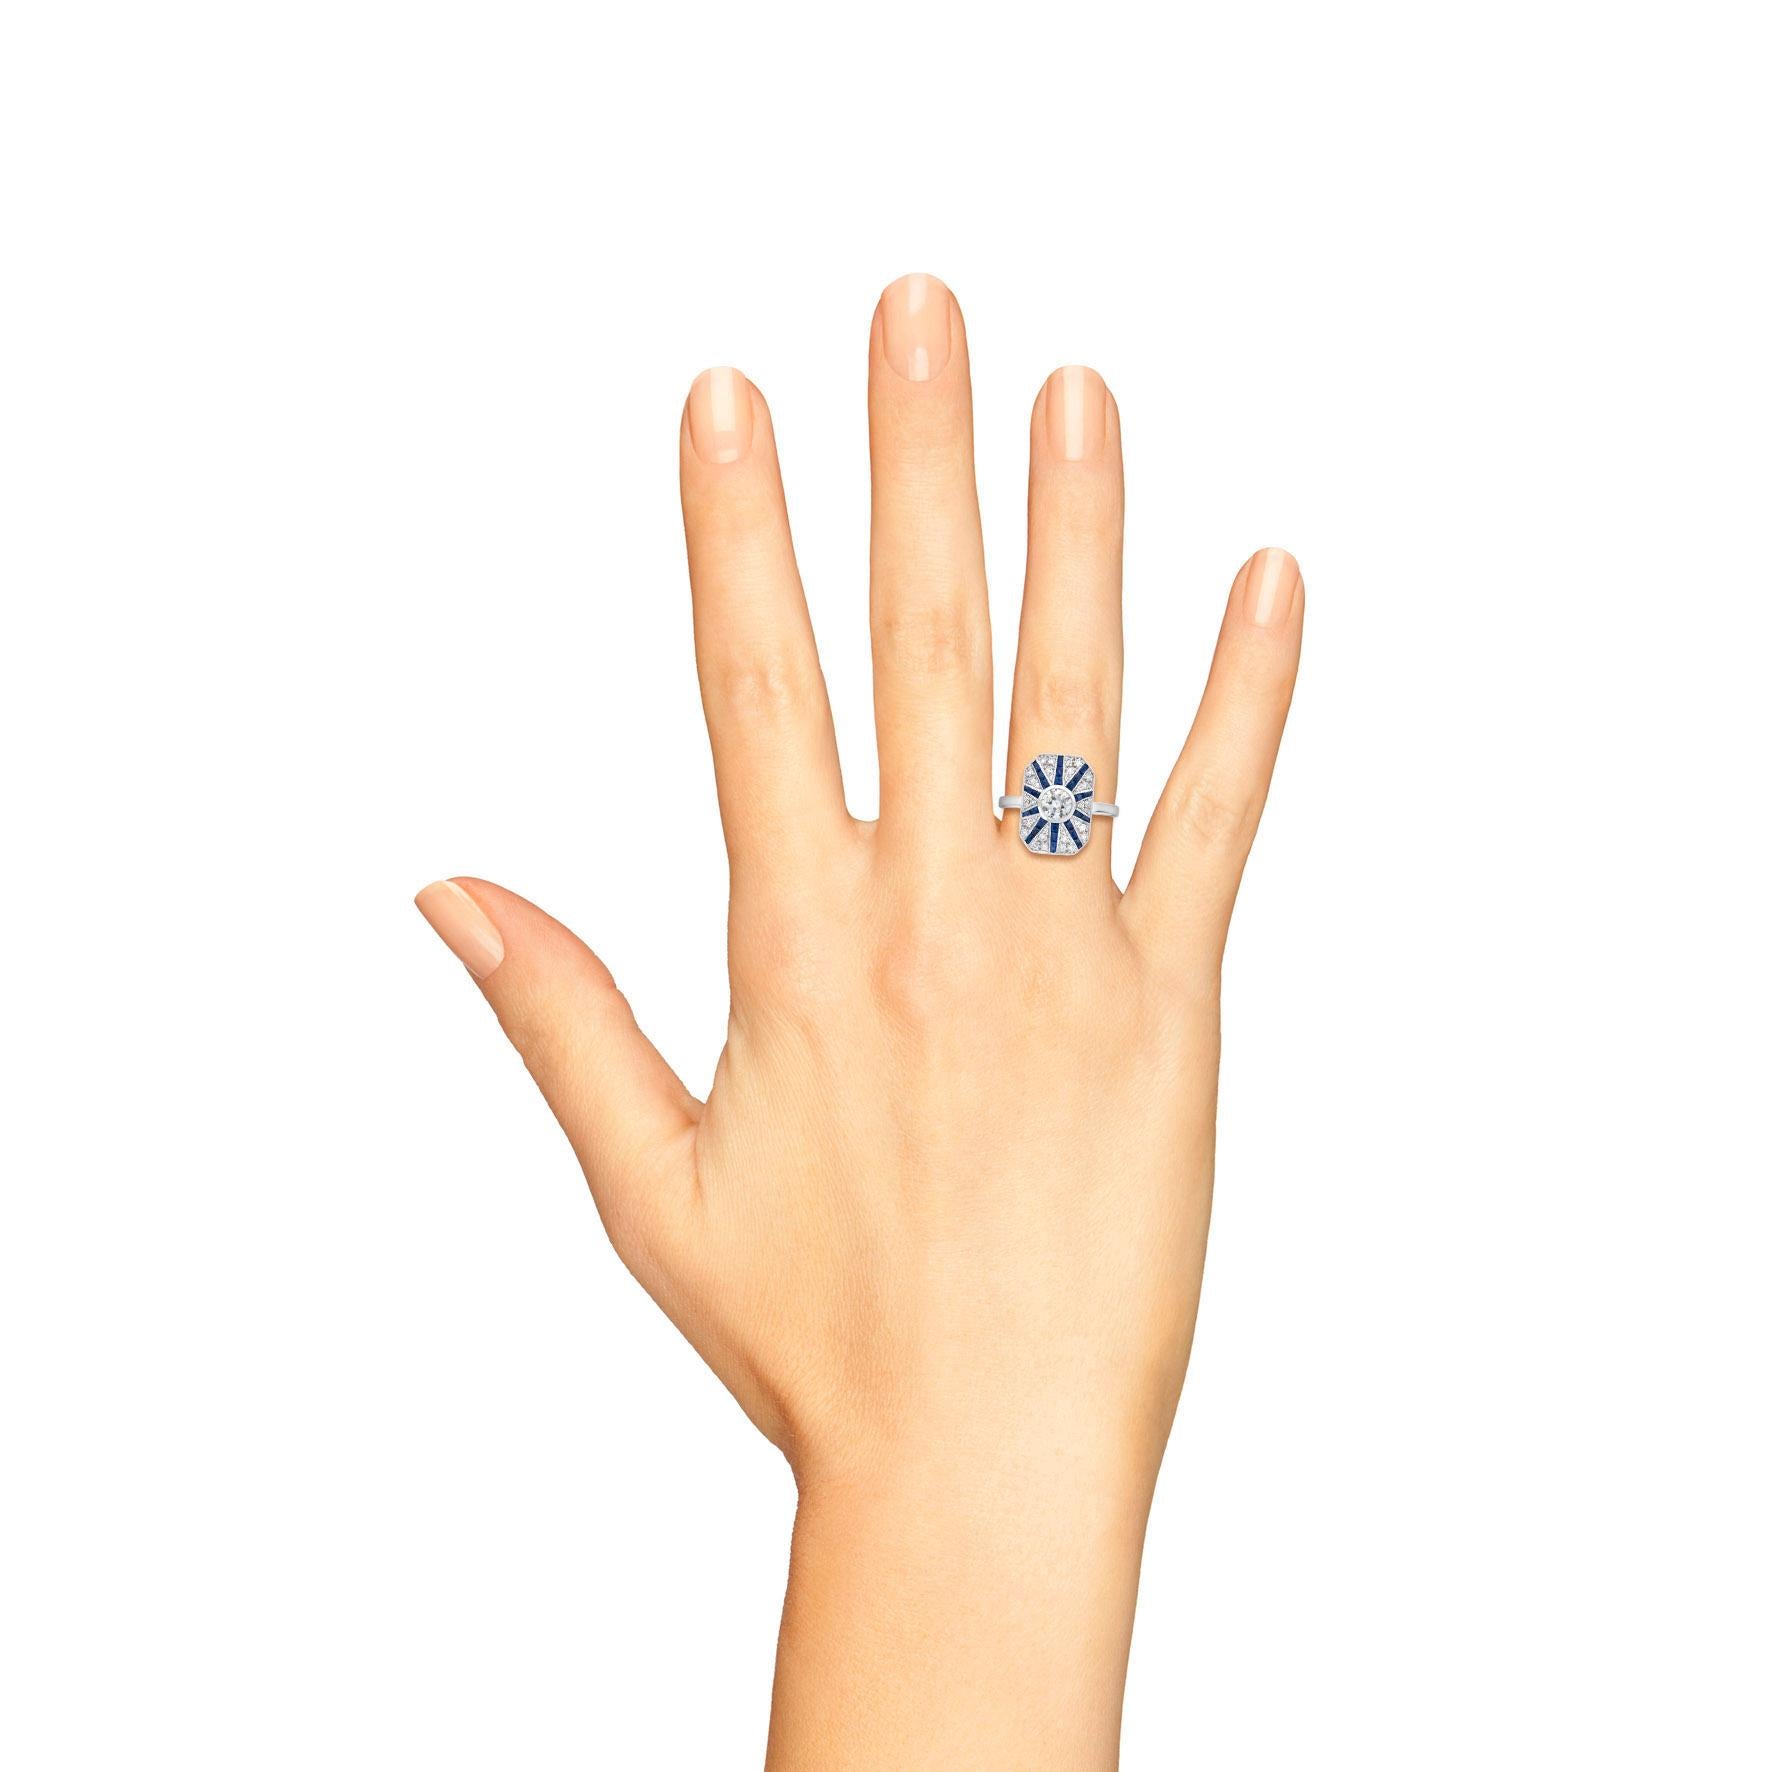 Une élégante bague en diamant et émeraude réalisée en or blanc 18k. Les diamants centraux sont estimés à 0.50 carat. Les saphirs bleus de taille française sont estimés à 1,30 carats. De style Art déco, la bague met en valeur une bande de saphirs